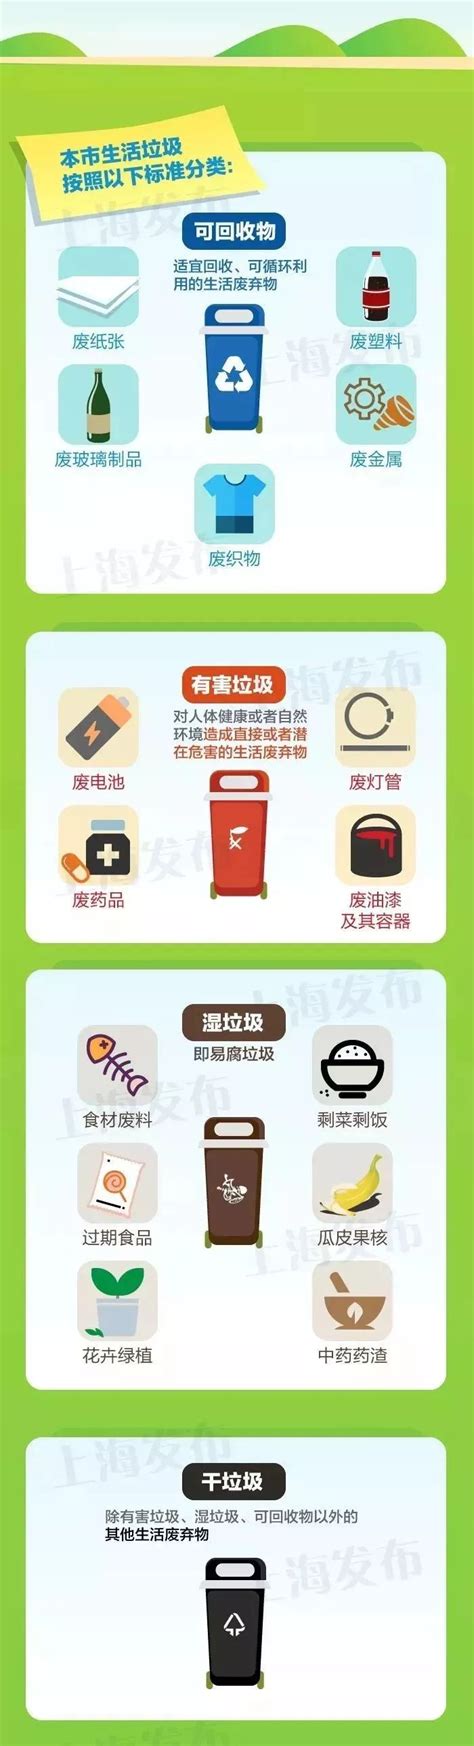 上海官方垃圾分类指南_上海杨浦